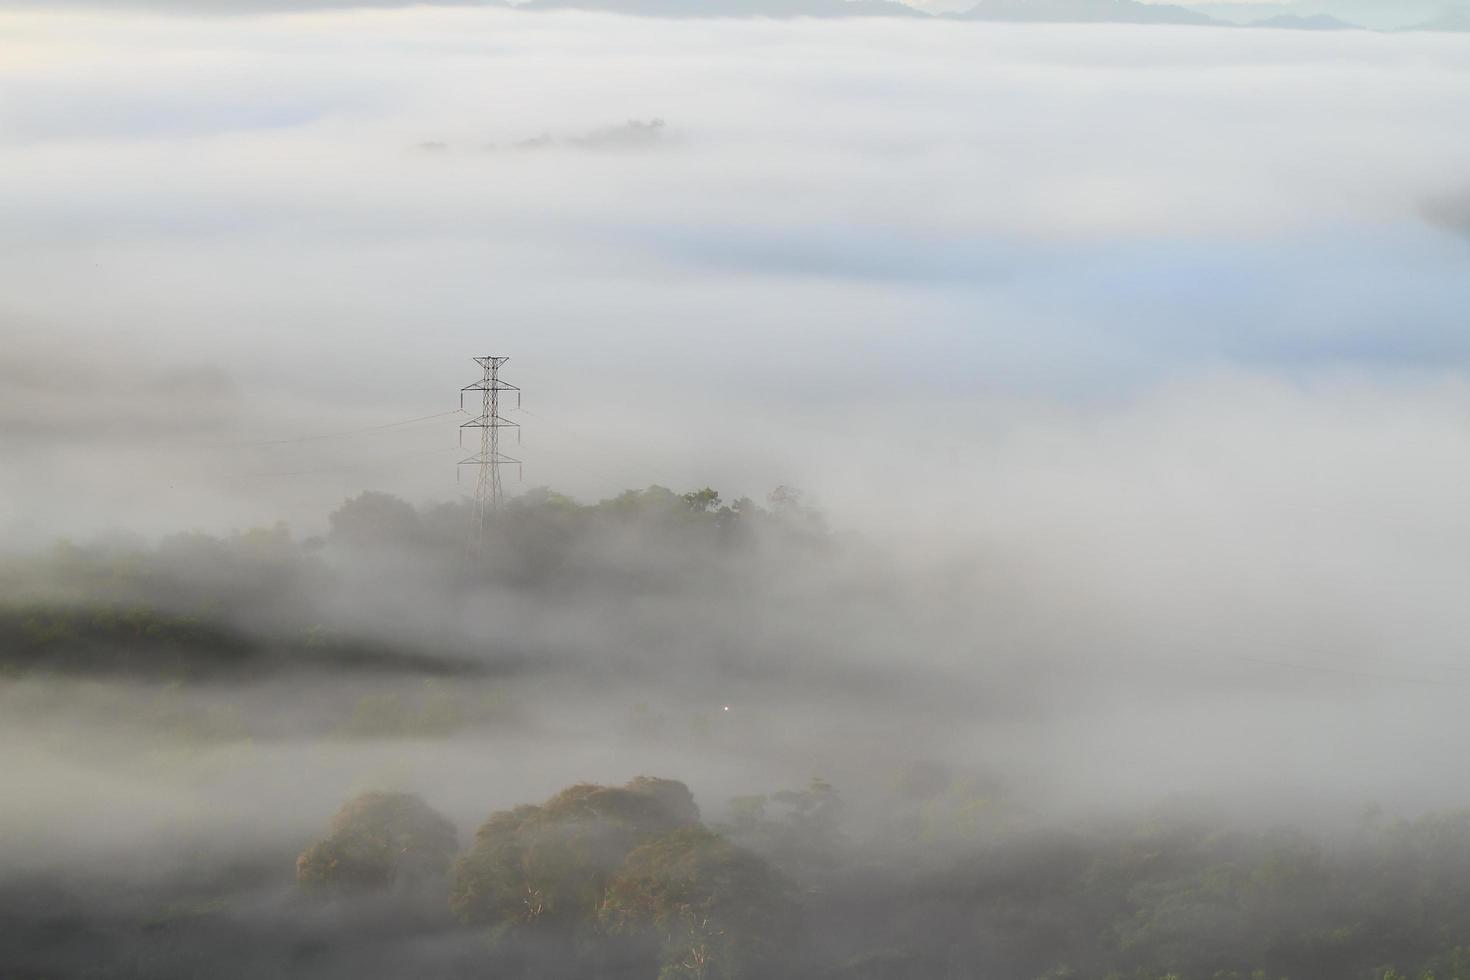 linhas de energia elétrica e postes emergindo da névoa foto